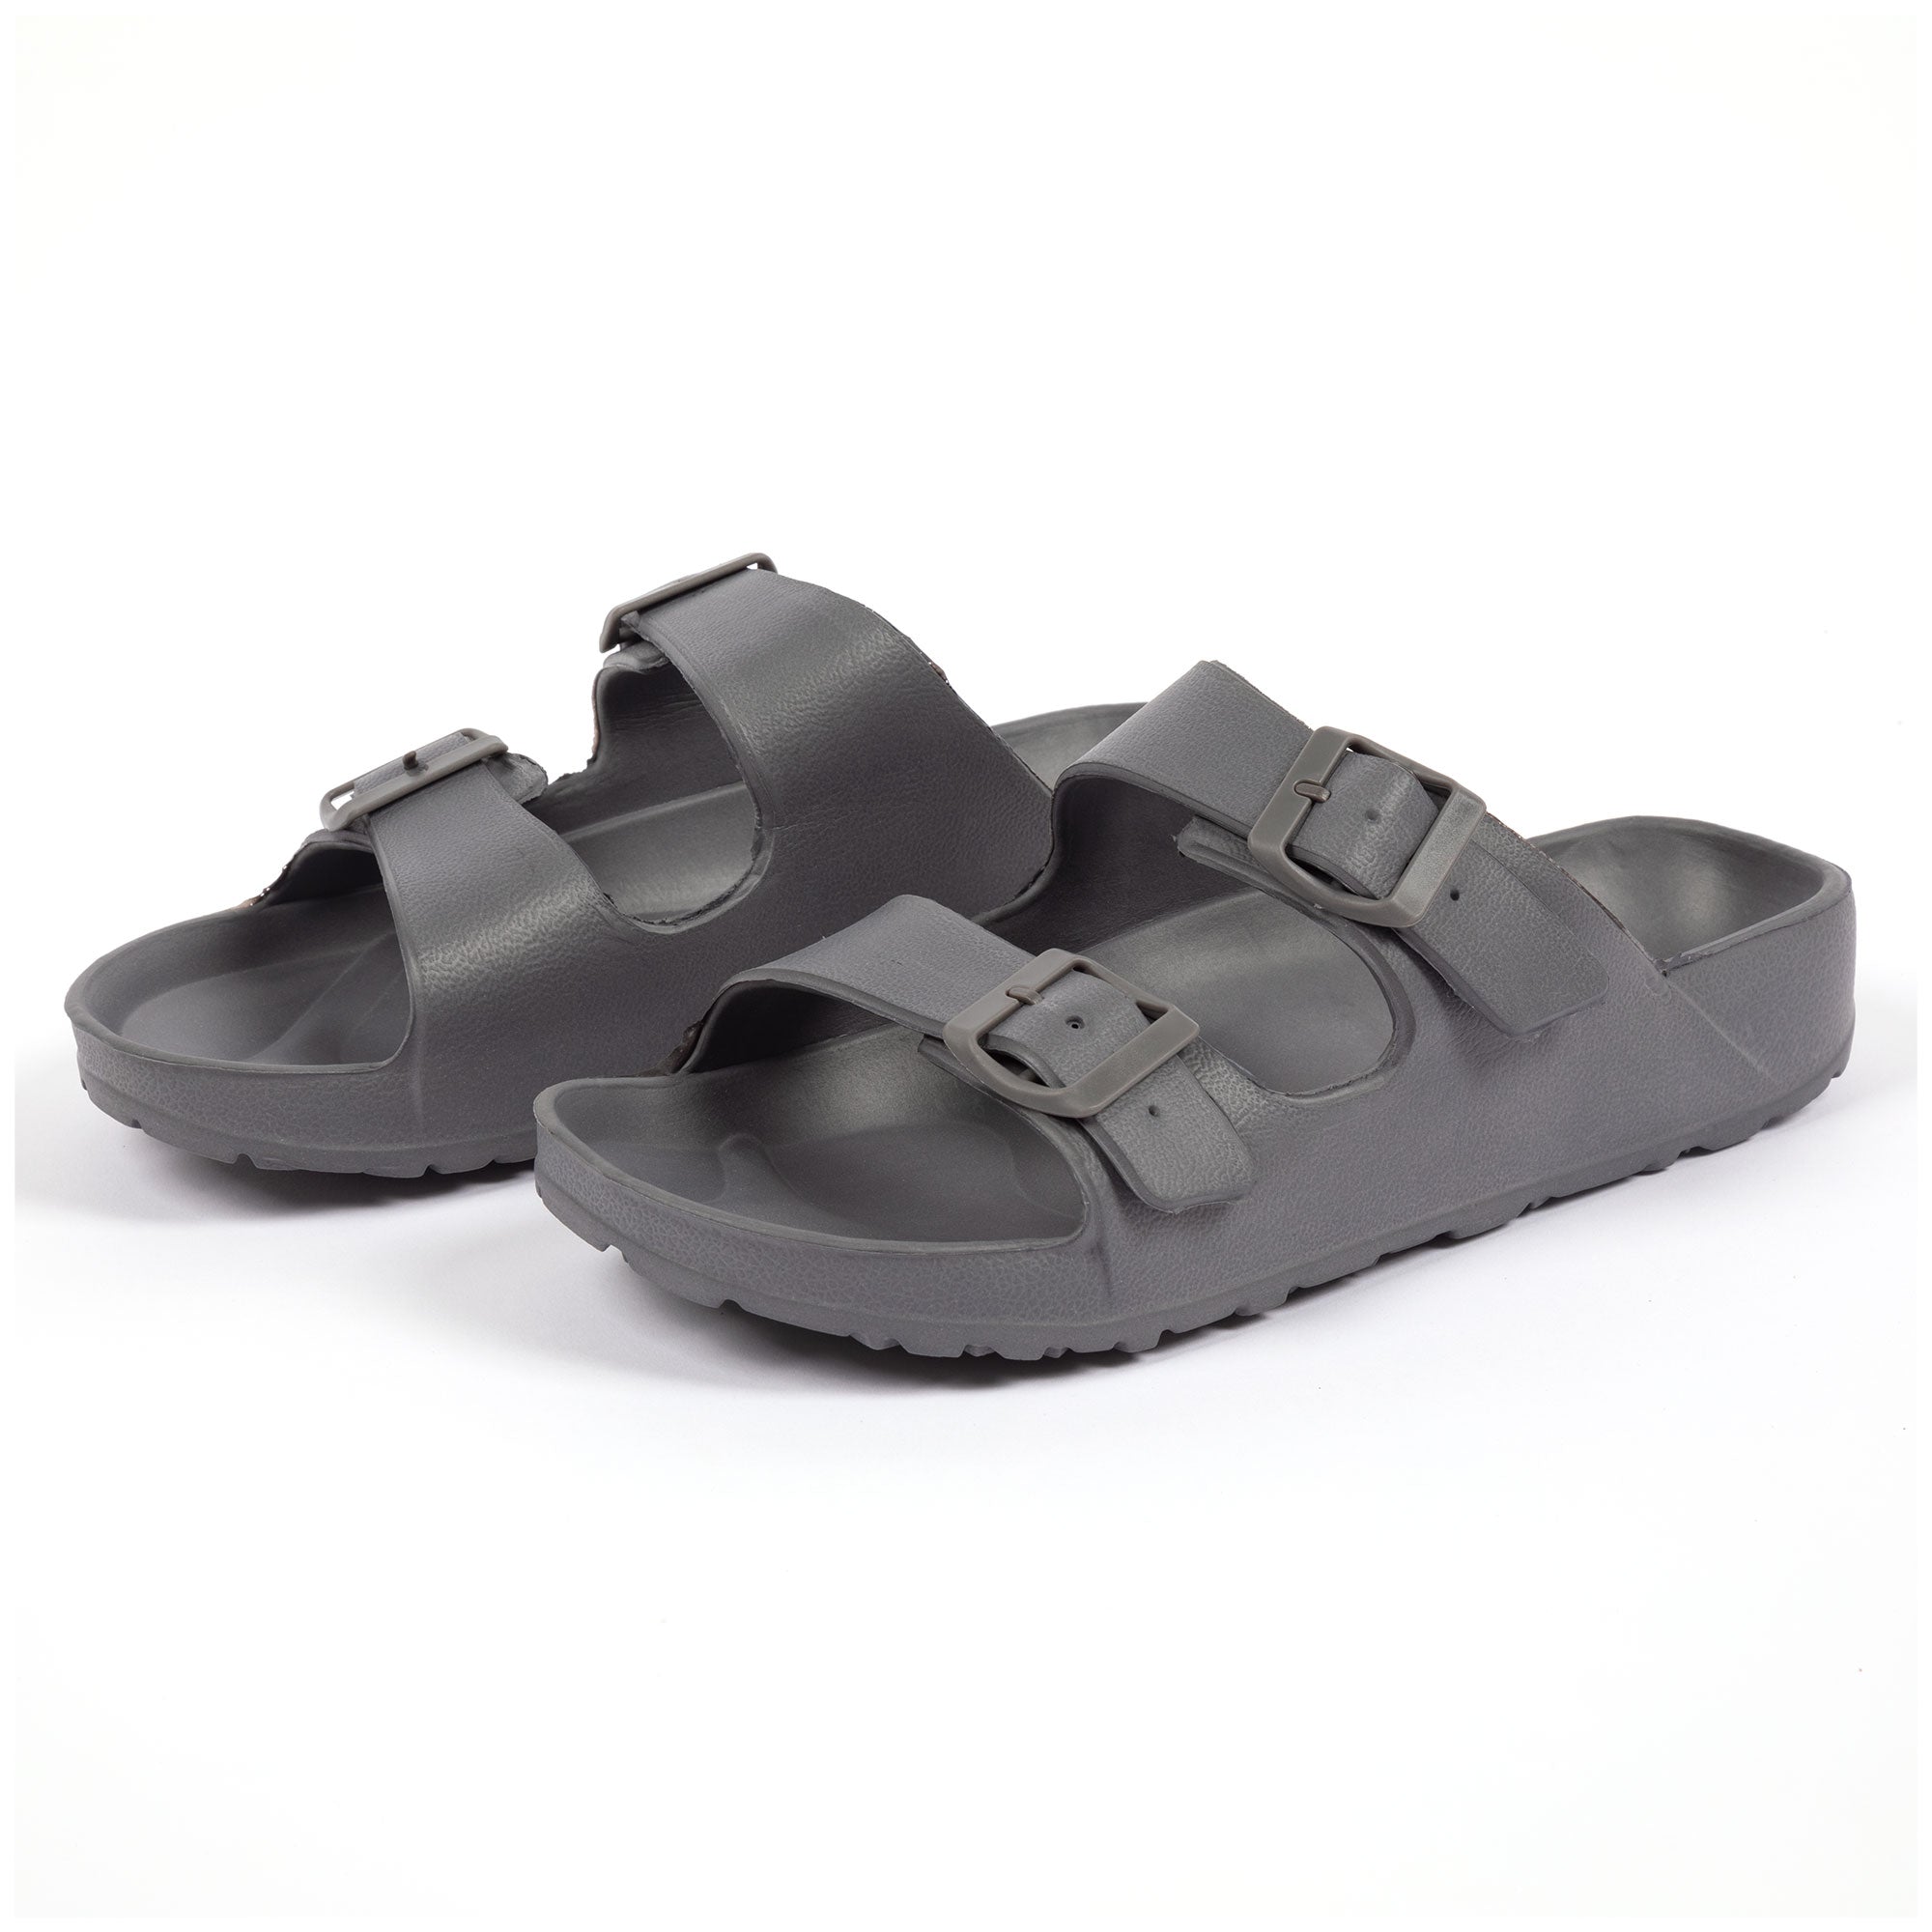 Men's Double Buckle Slide Sandals - Gray - 12